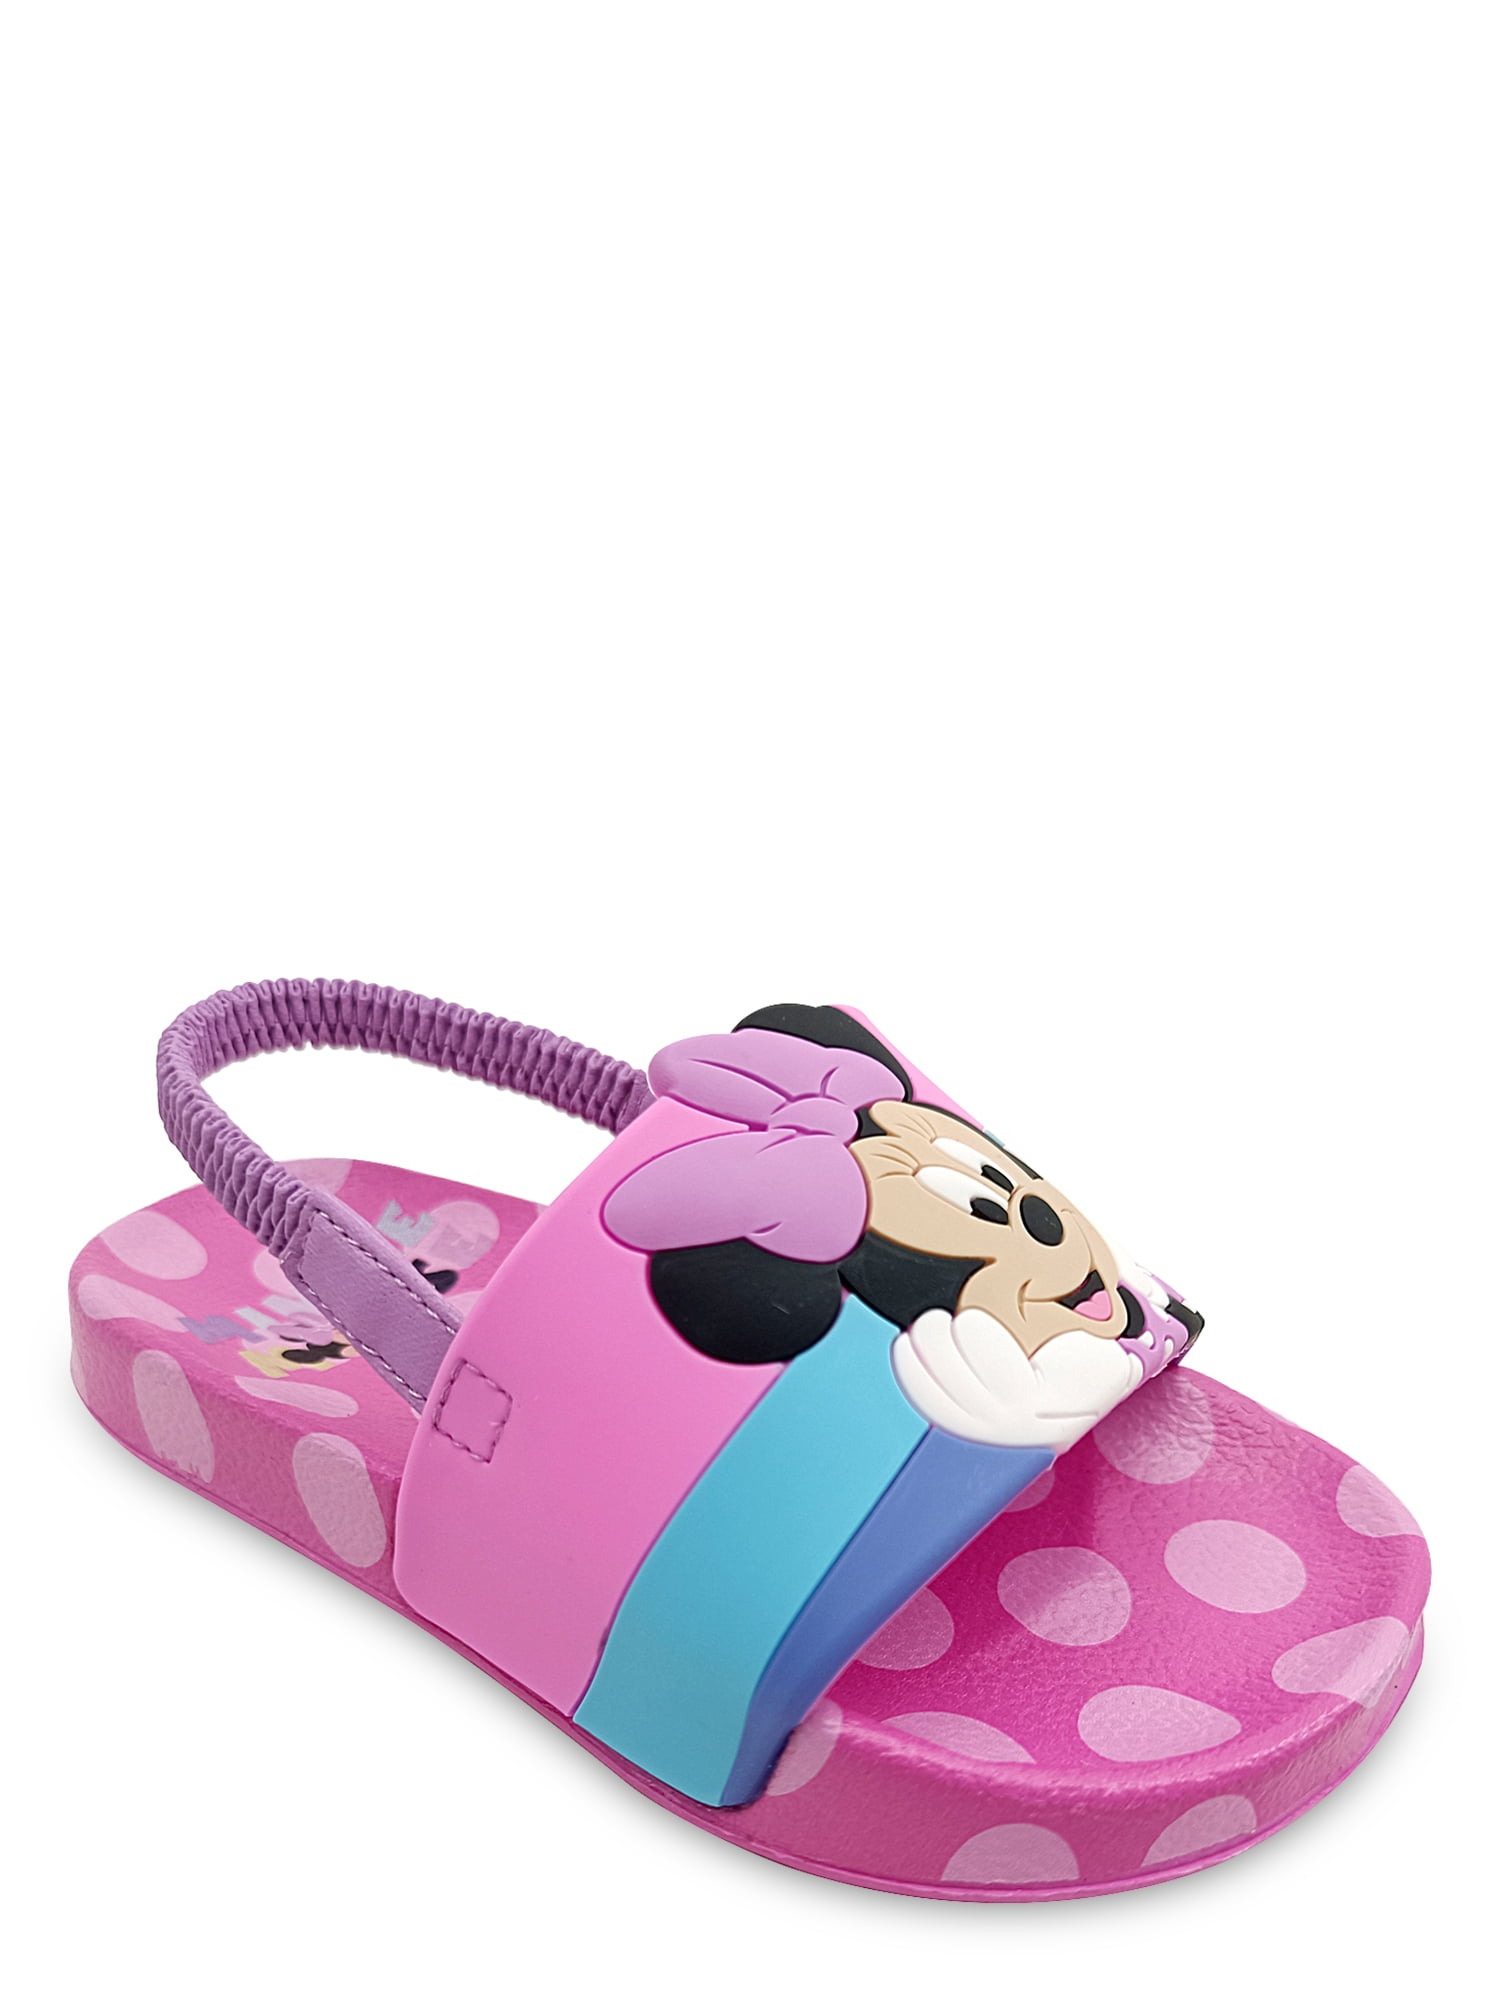 Minnie Mouse Flip Flops 